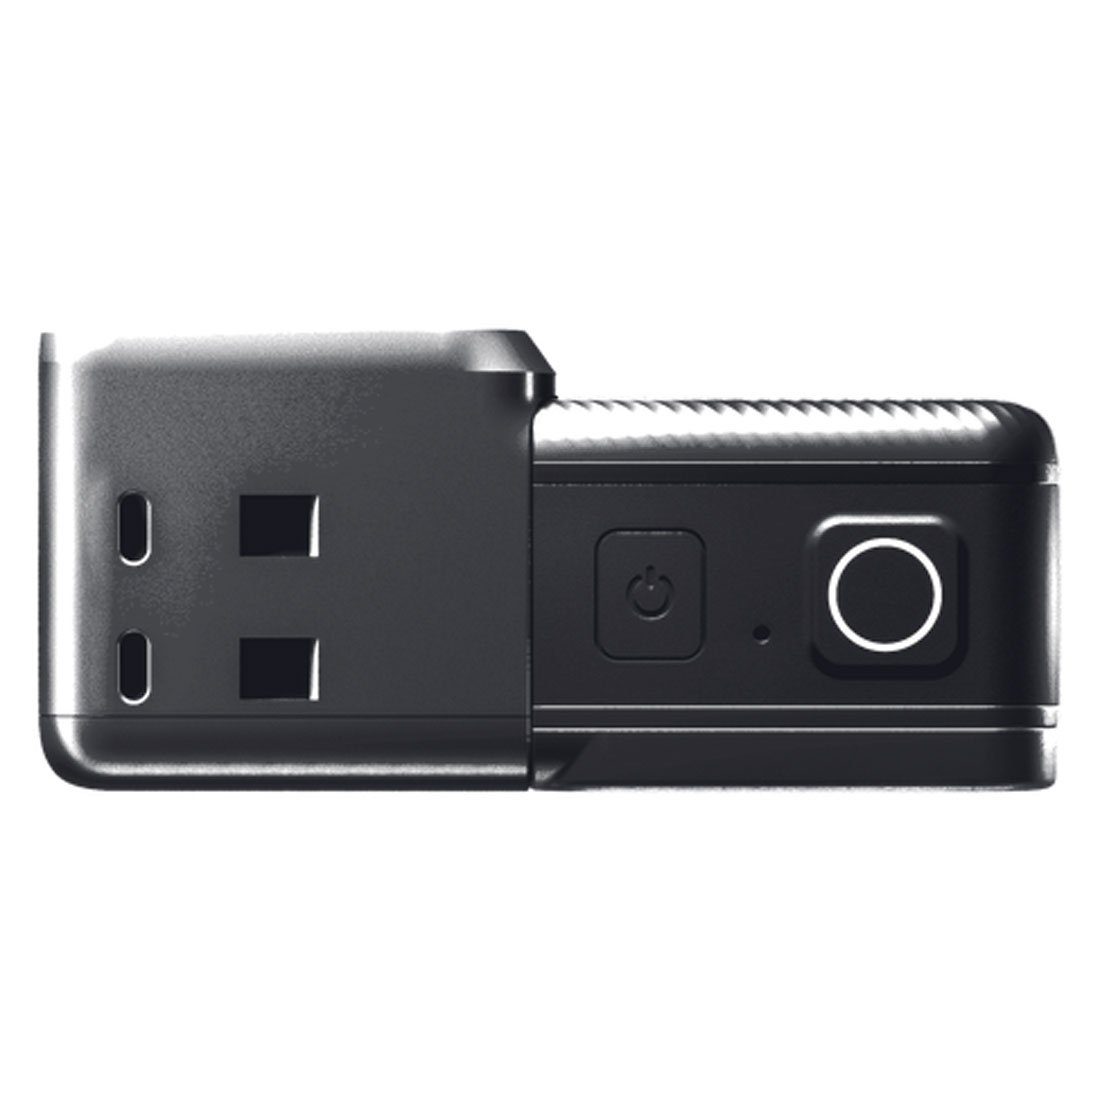 Cam Action Speicherkarte Insta360 Insta360 mit Twin One RS Actioncam